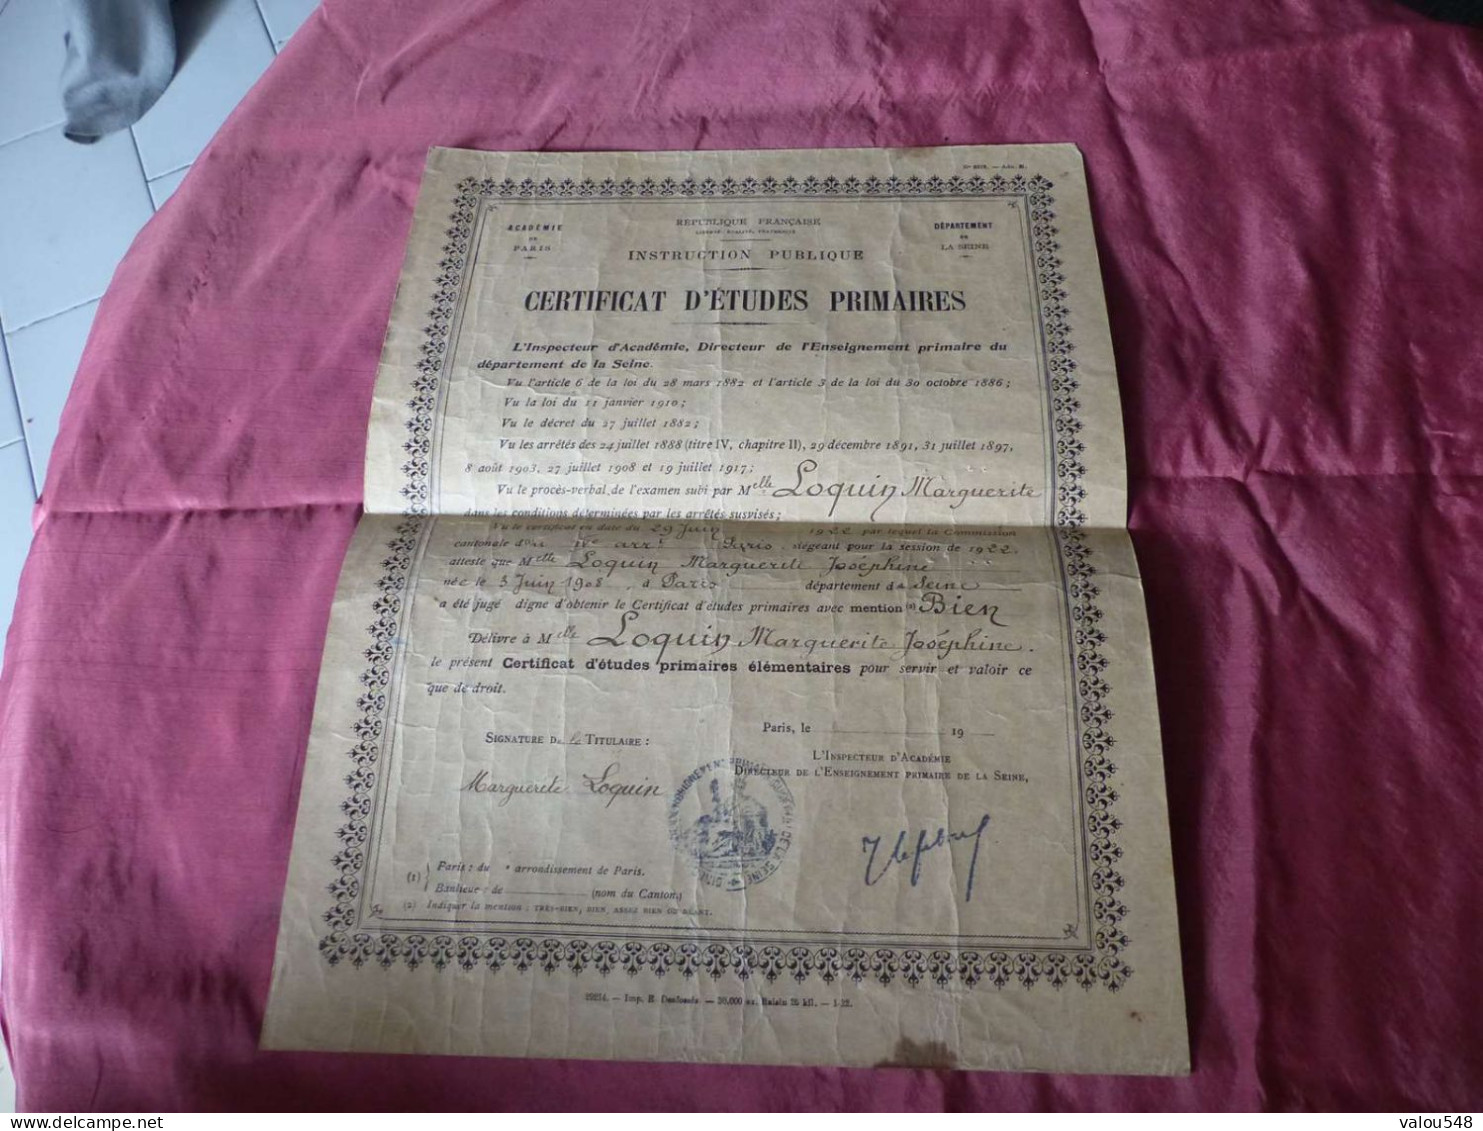 VP-9 , Diplôme , Certificat D'études Primaires, Académie De Paris, 29 Juin 1922 - Diploma & School Reports